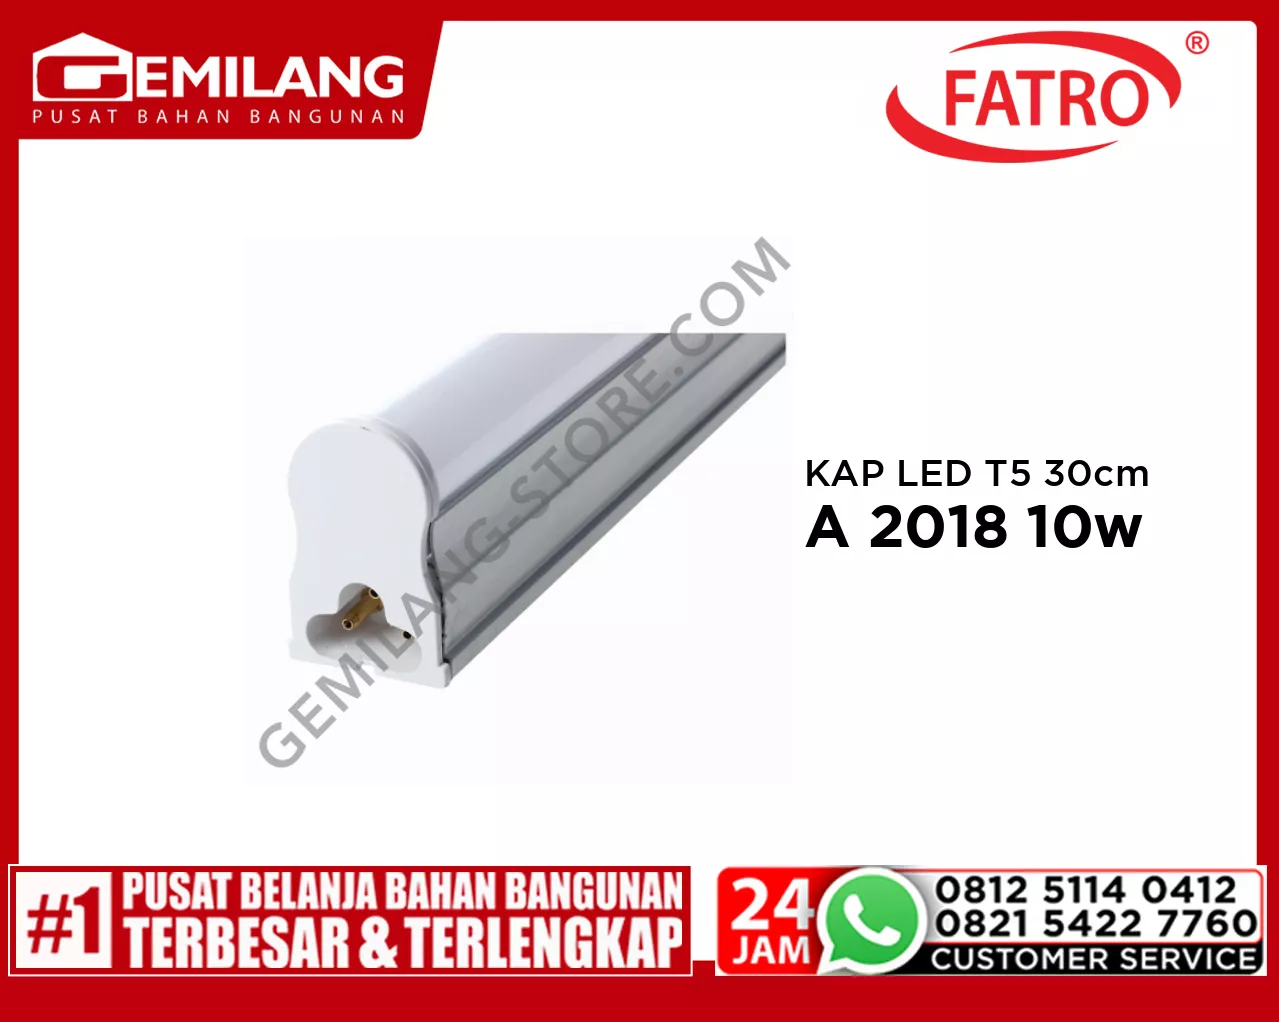 FATRO KAP LED T5 60cm PINK SA 2018 10w